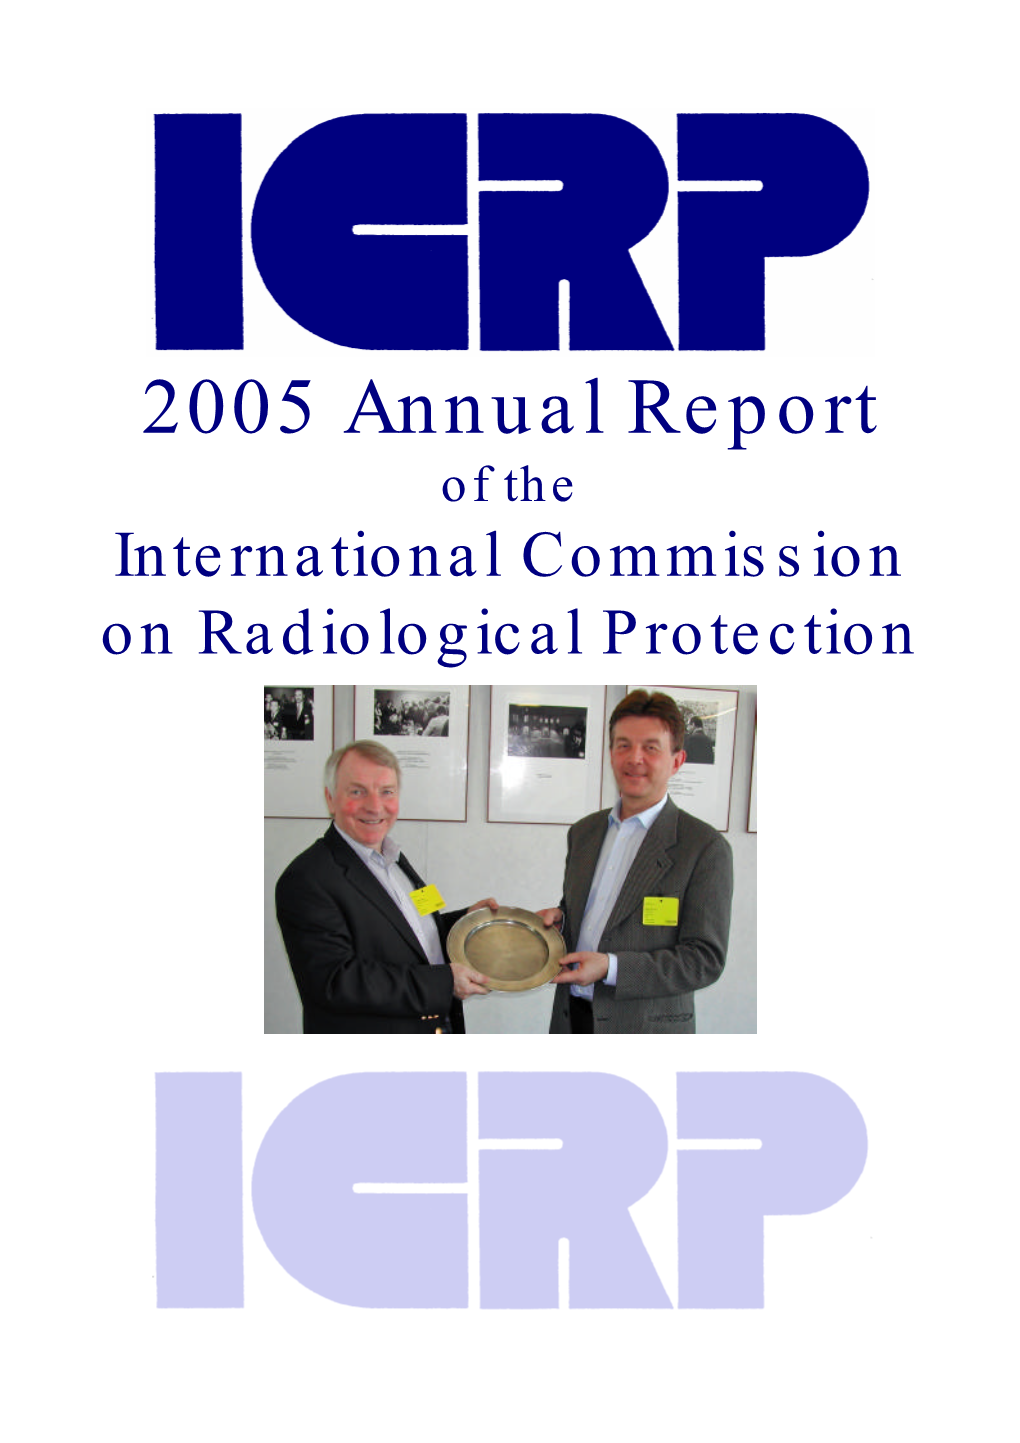 Enclosure: ICRP 2005 Annual Report